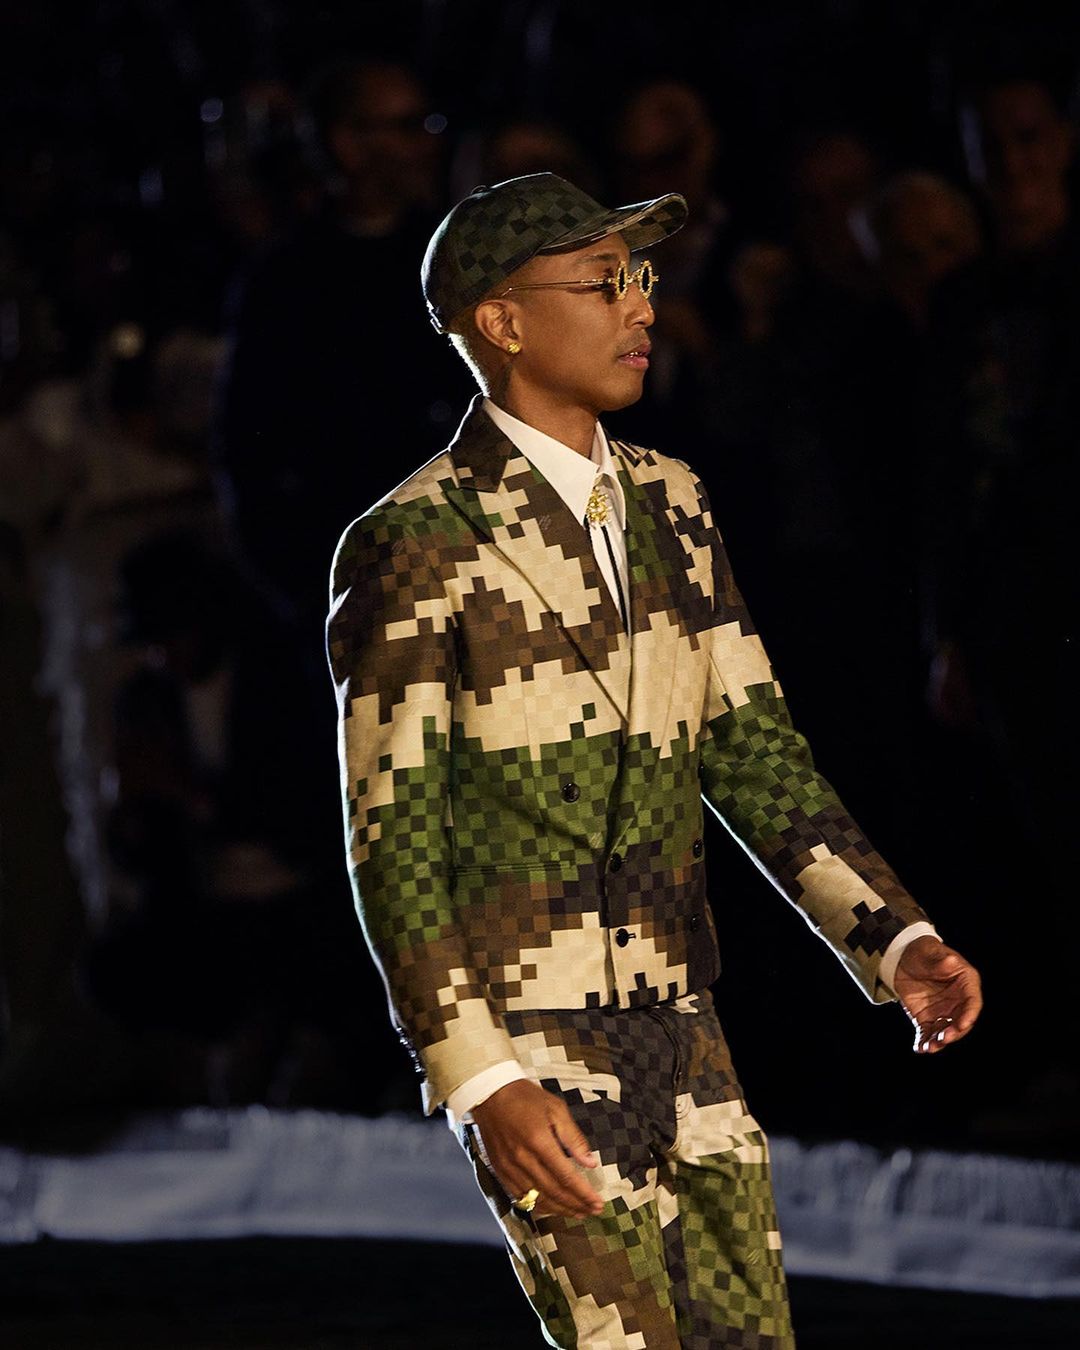 Rihanna and A$AP Rocky Attends Pharrell Lois Vuitton Show, Jay-Z